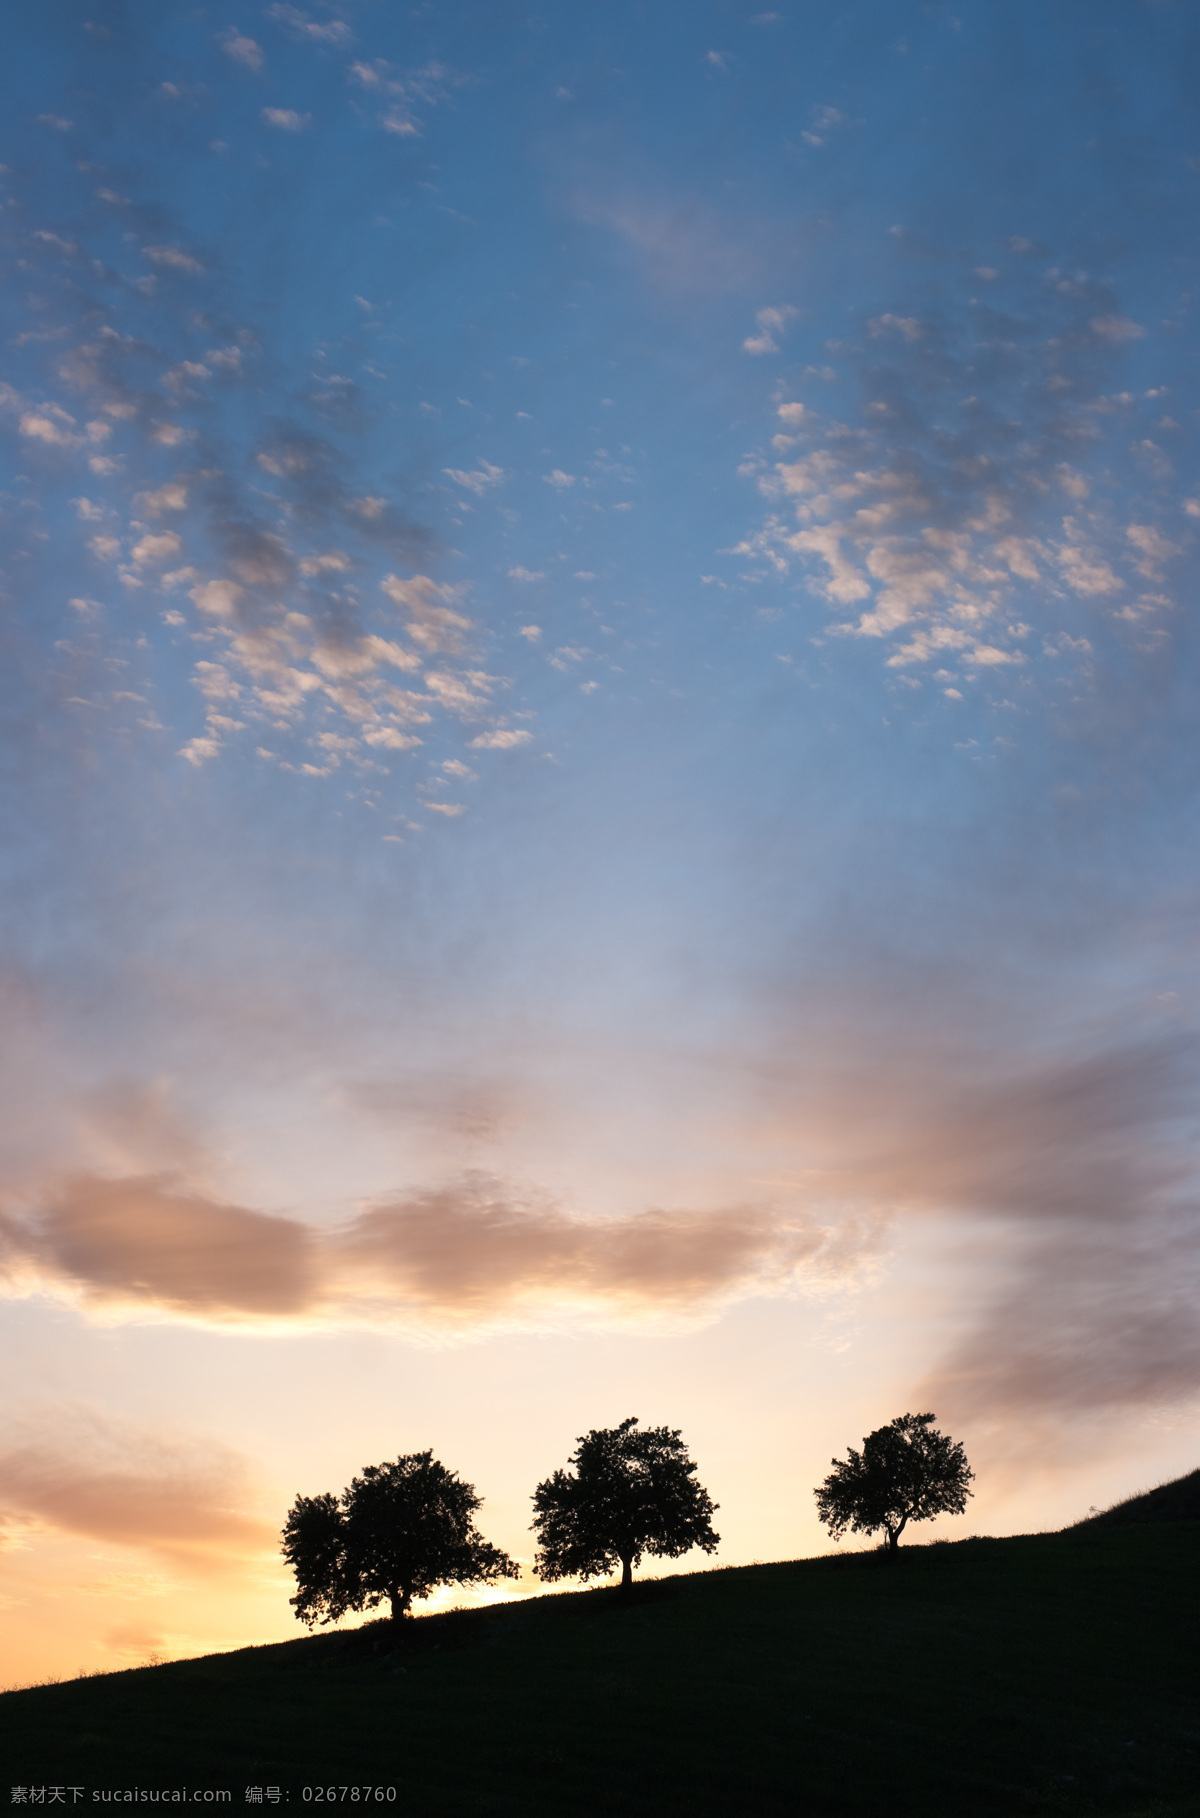 抽象 黄昏 剪影 黎明 欧洲 日落 天空 西西里岛 晨光 中 树 云彩 cloudscape 五颜六色 夜间 组 小山 叶子 大自然的美 自然风景 自然景观